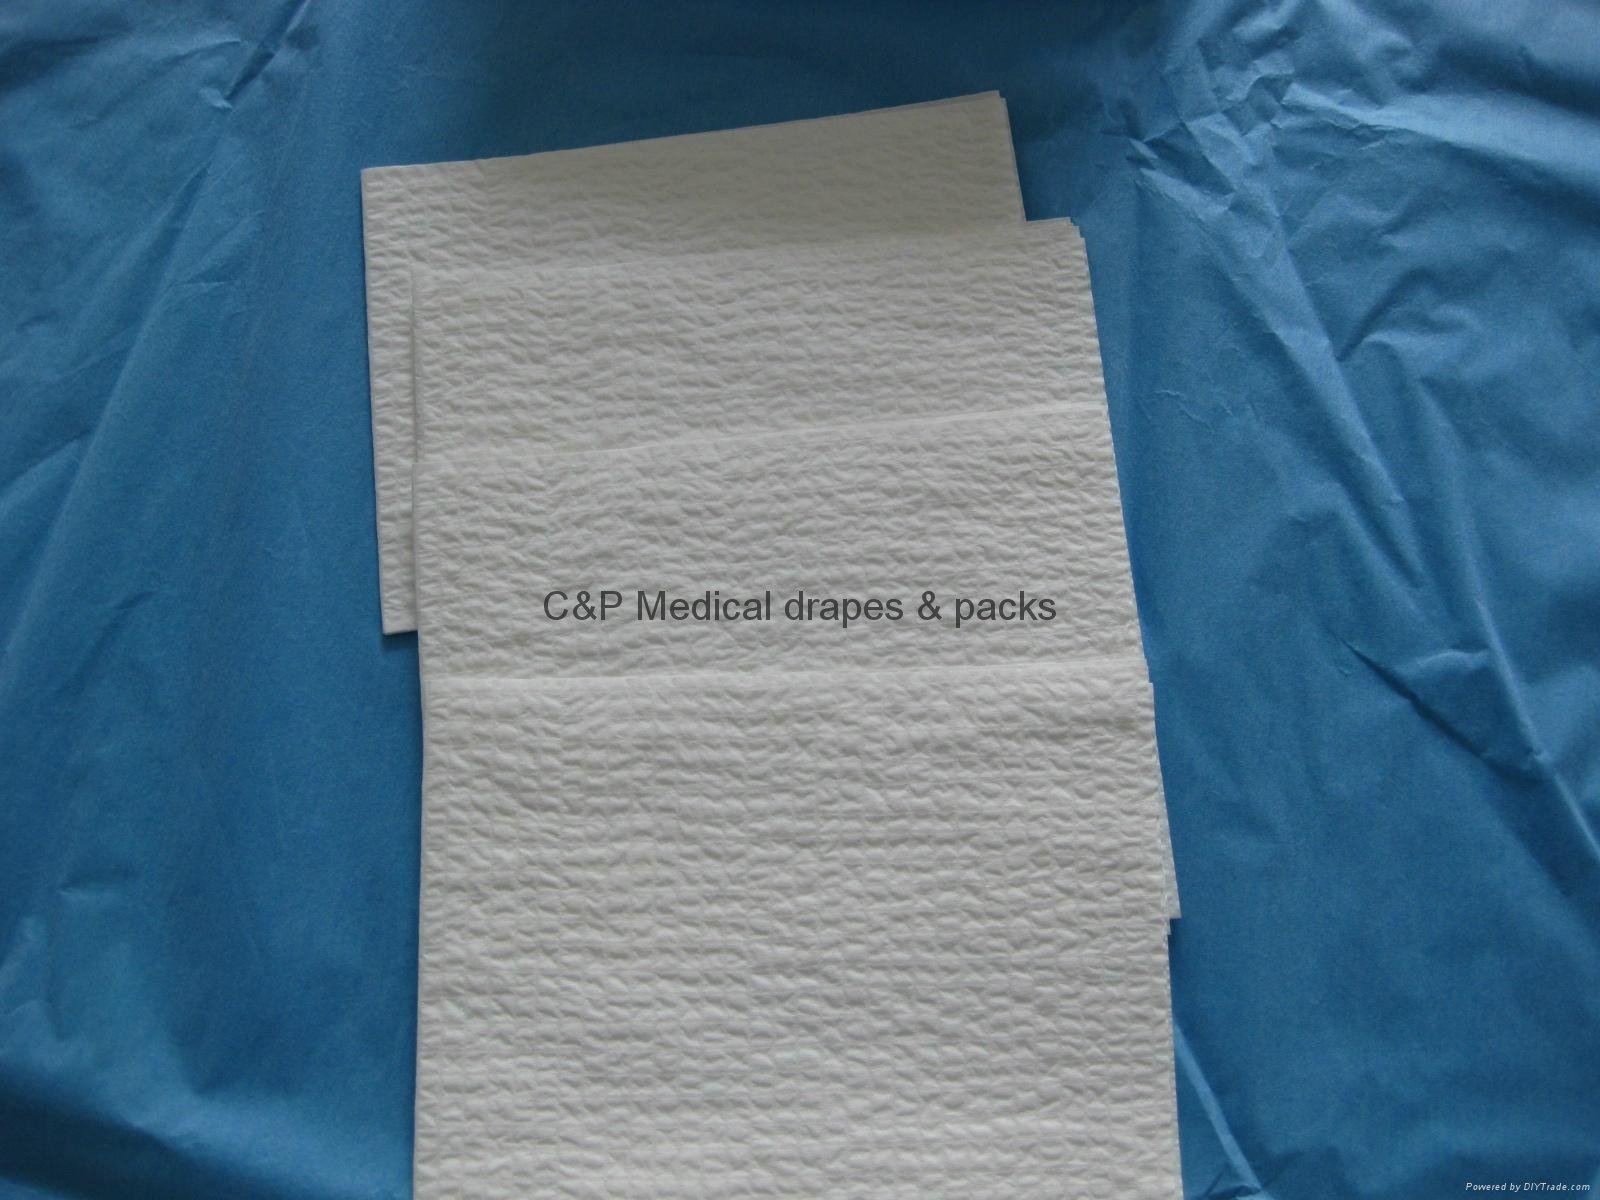 Scrimed Reinforced Disposable hospital Hand Towel